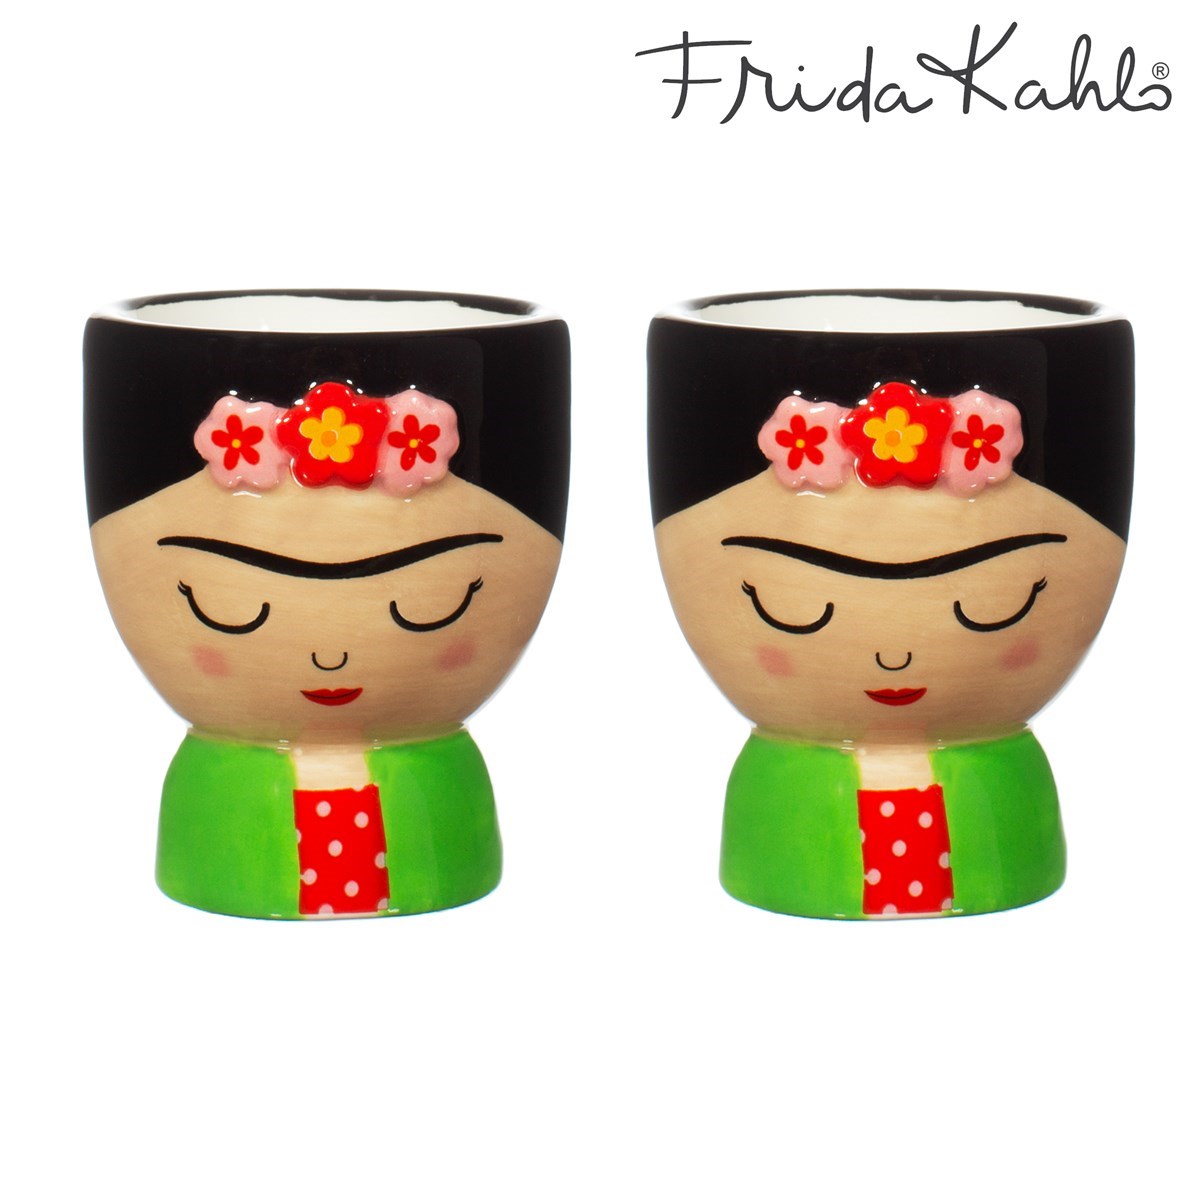 Frida Egg Cups Set of 2